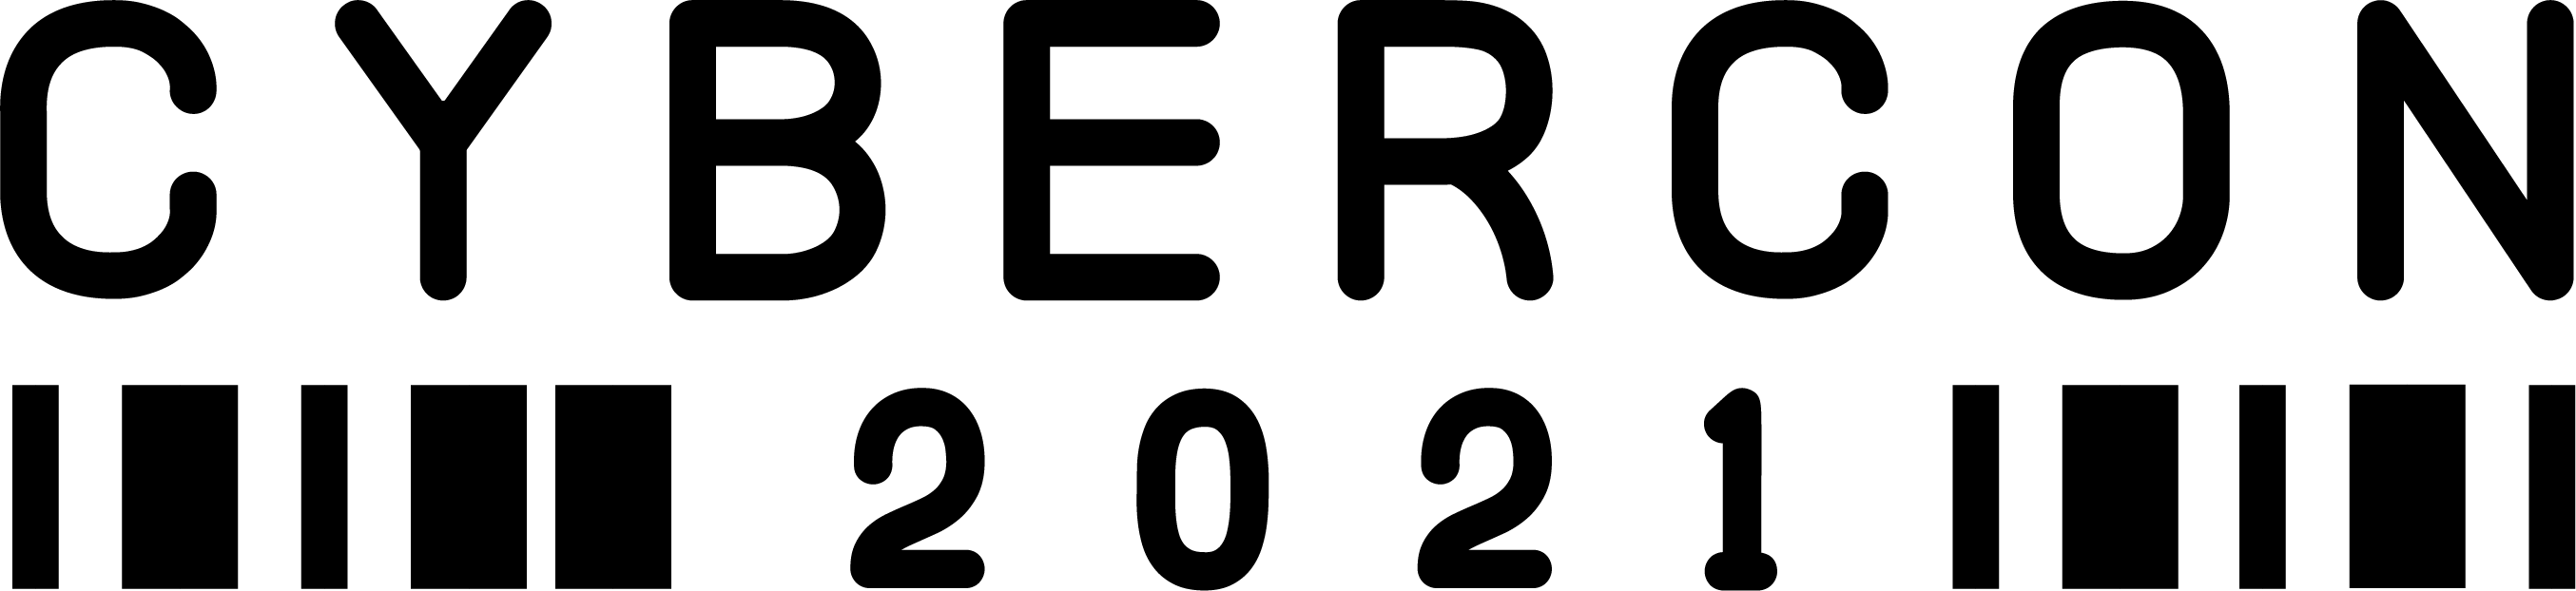 CyberCon Logo 2021.png